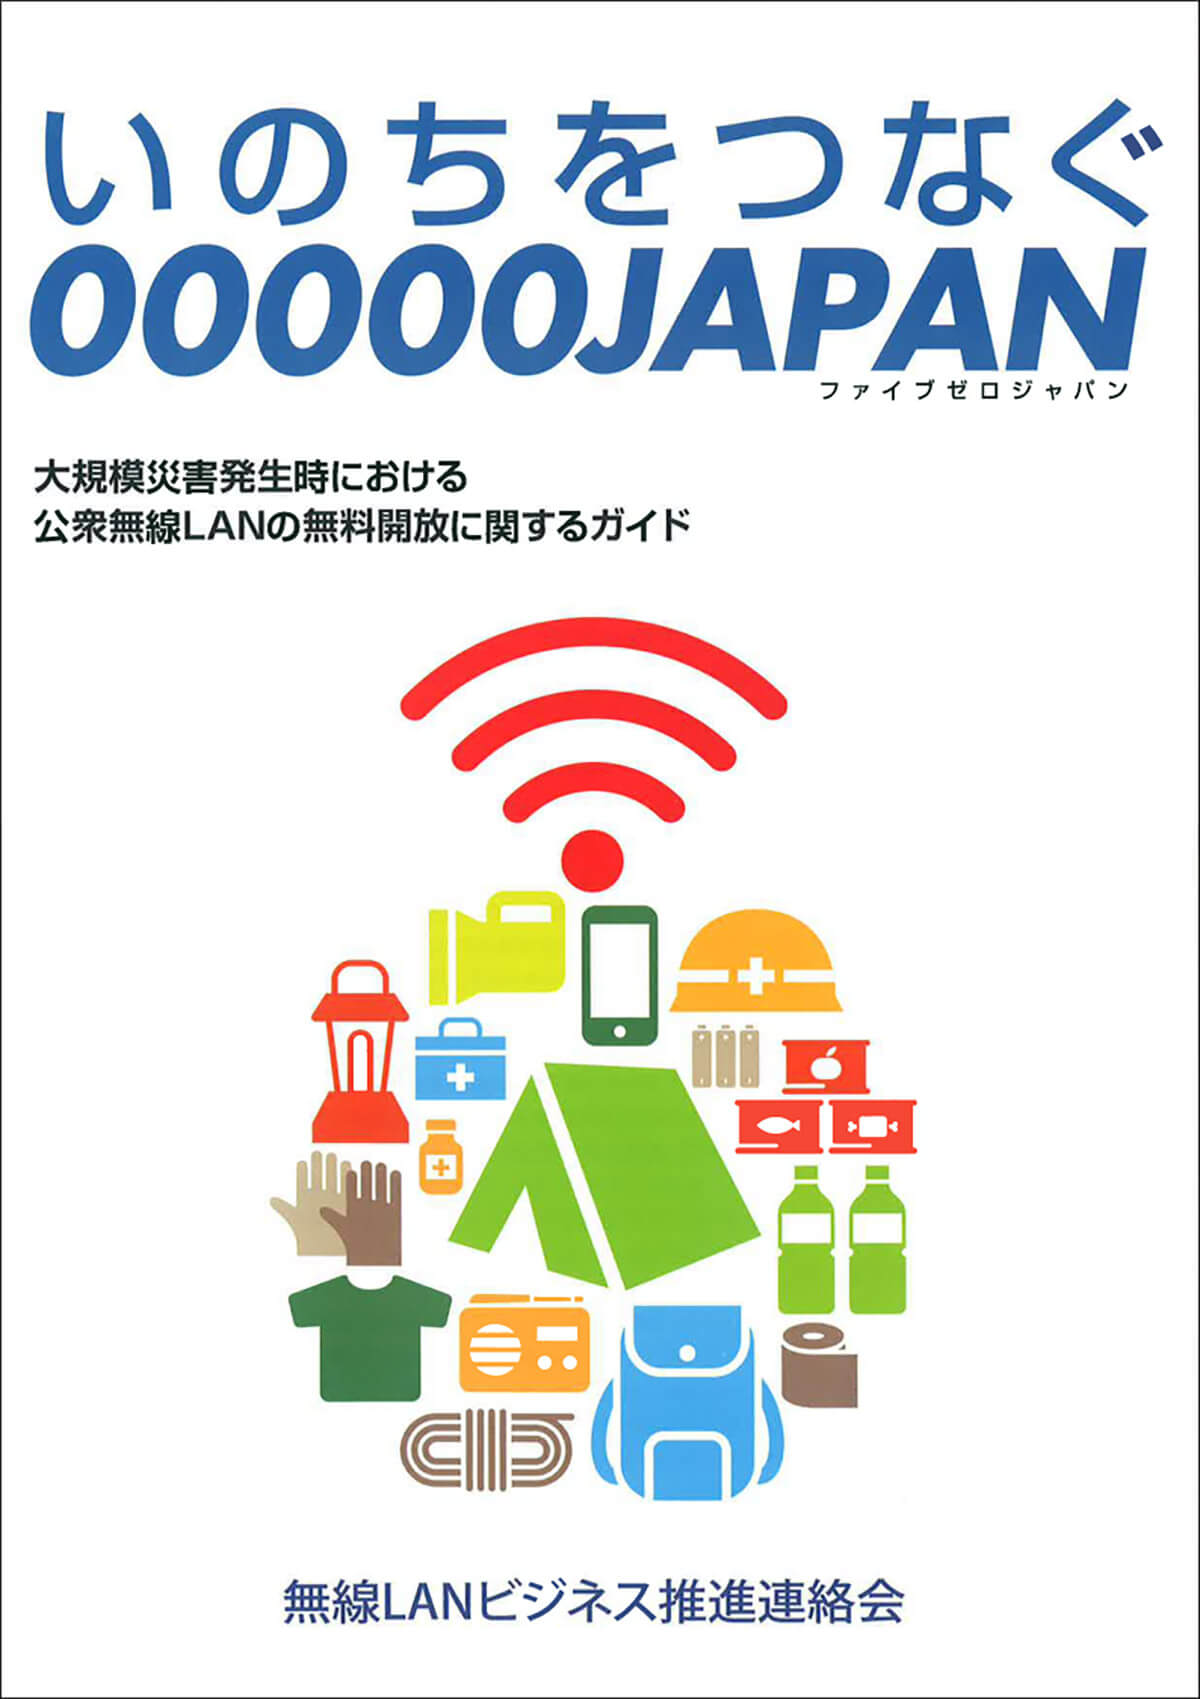 公衆無線LAN「00000JAPAN（ファイブゼロジャパン）」